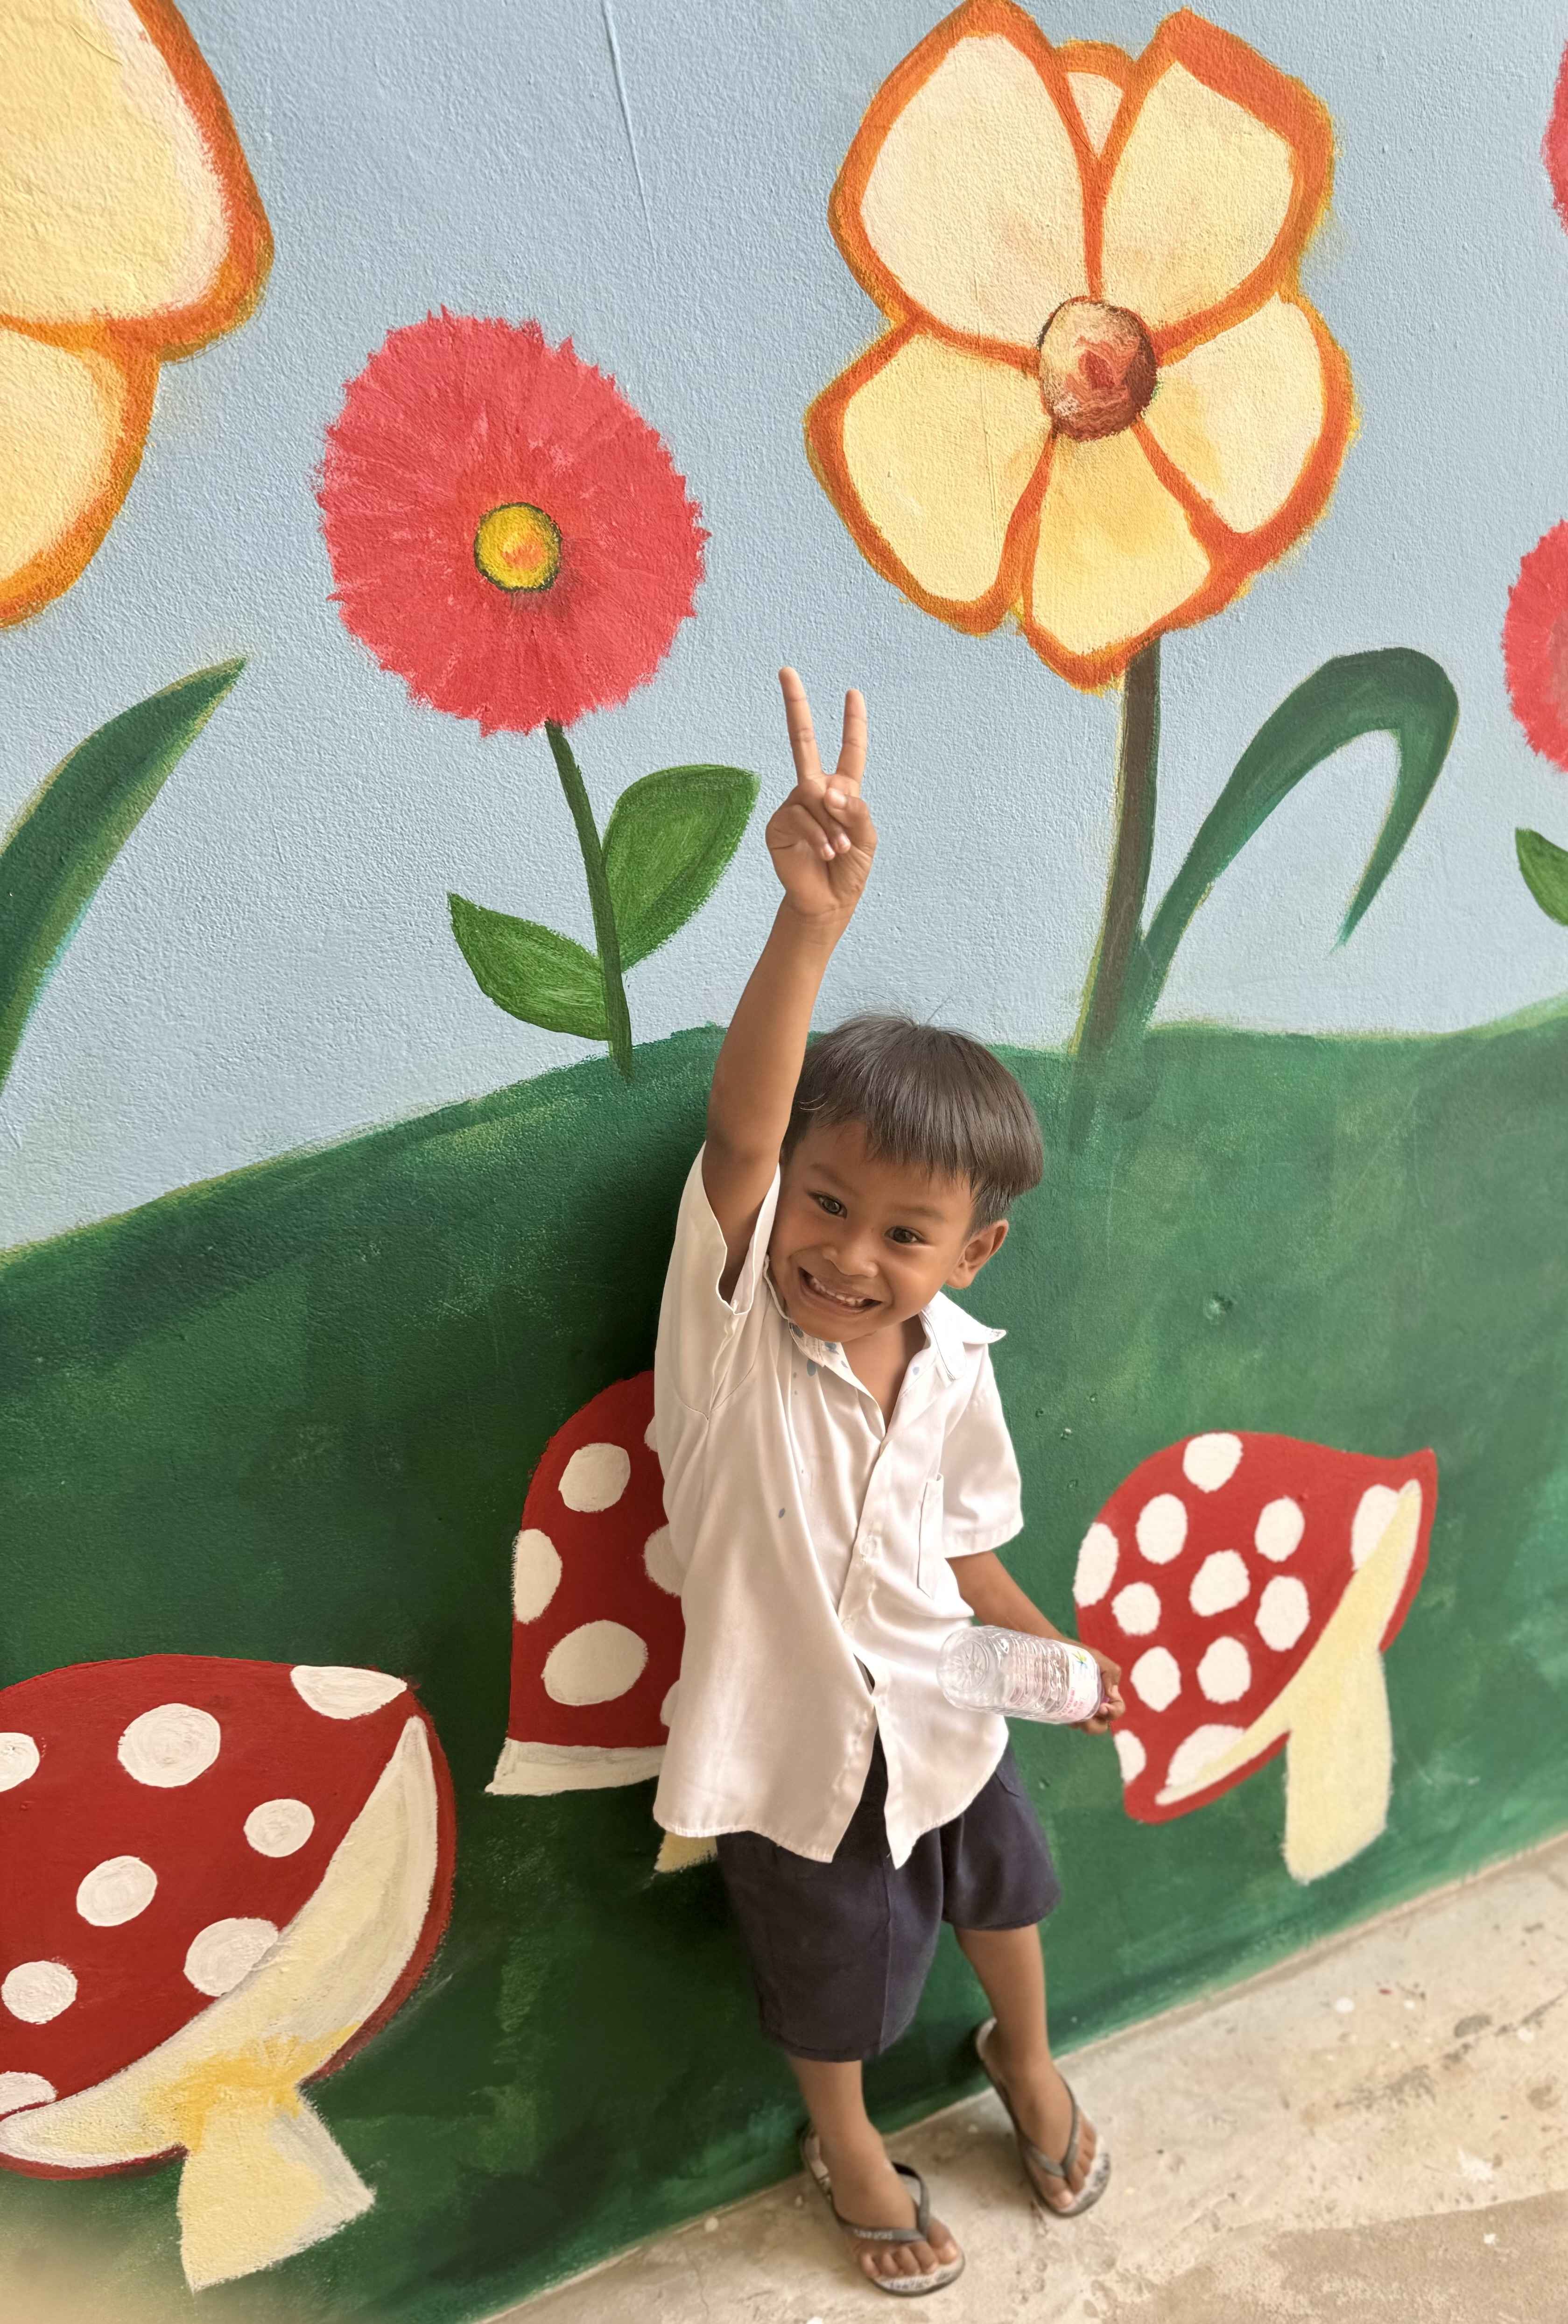 Peace sign child in cambodia